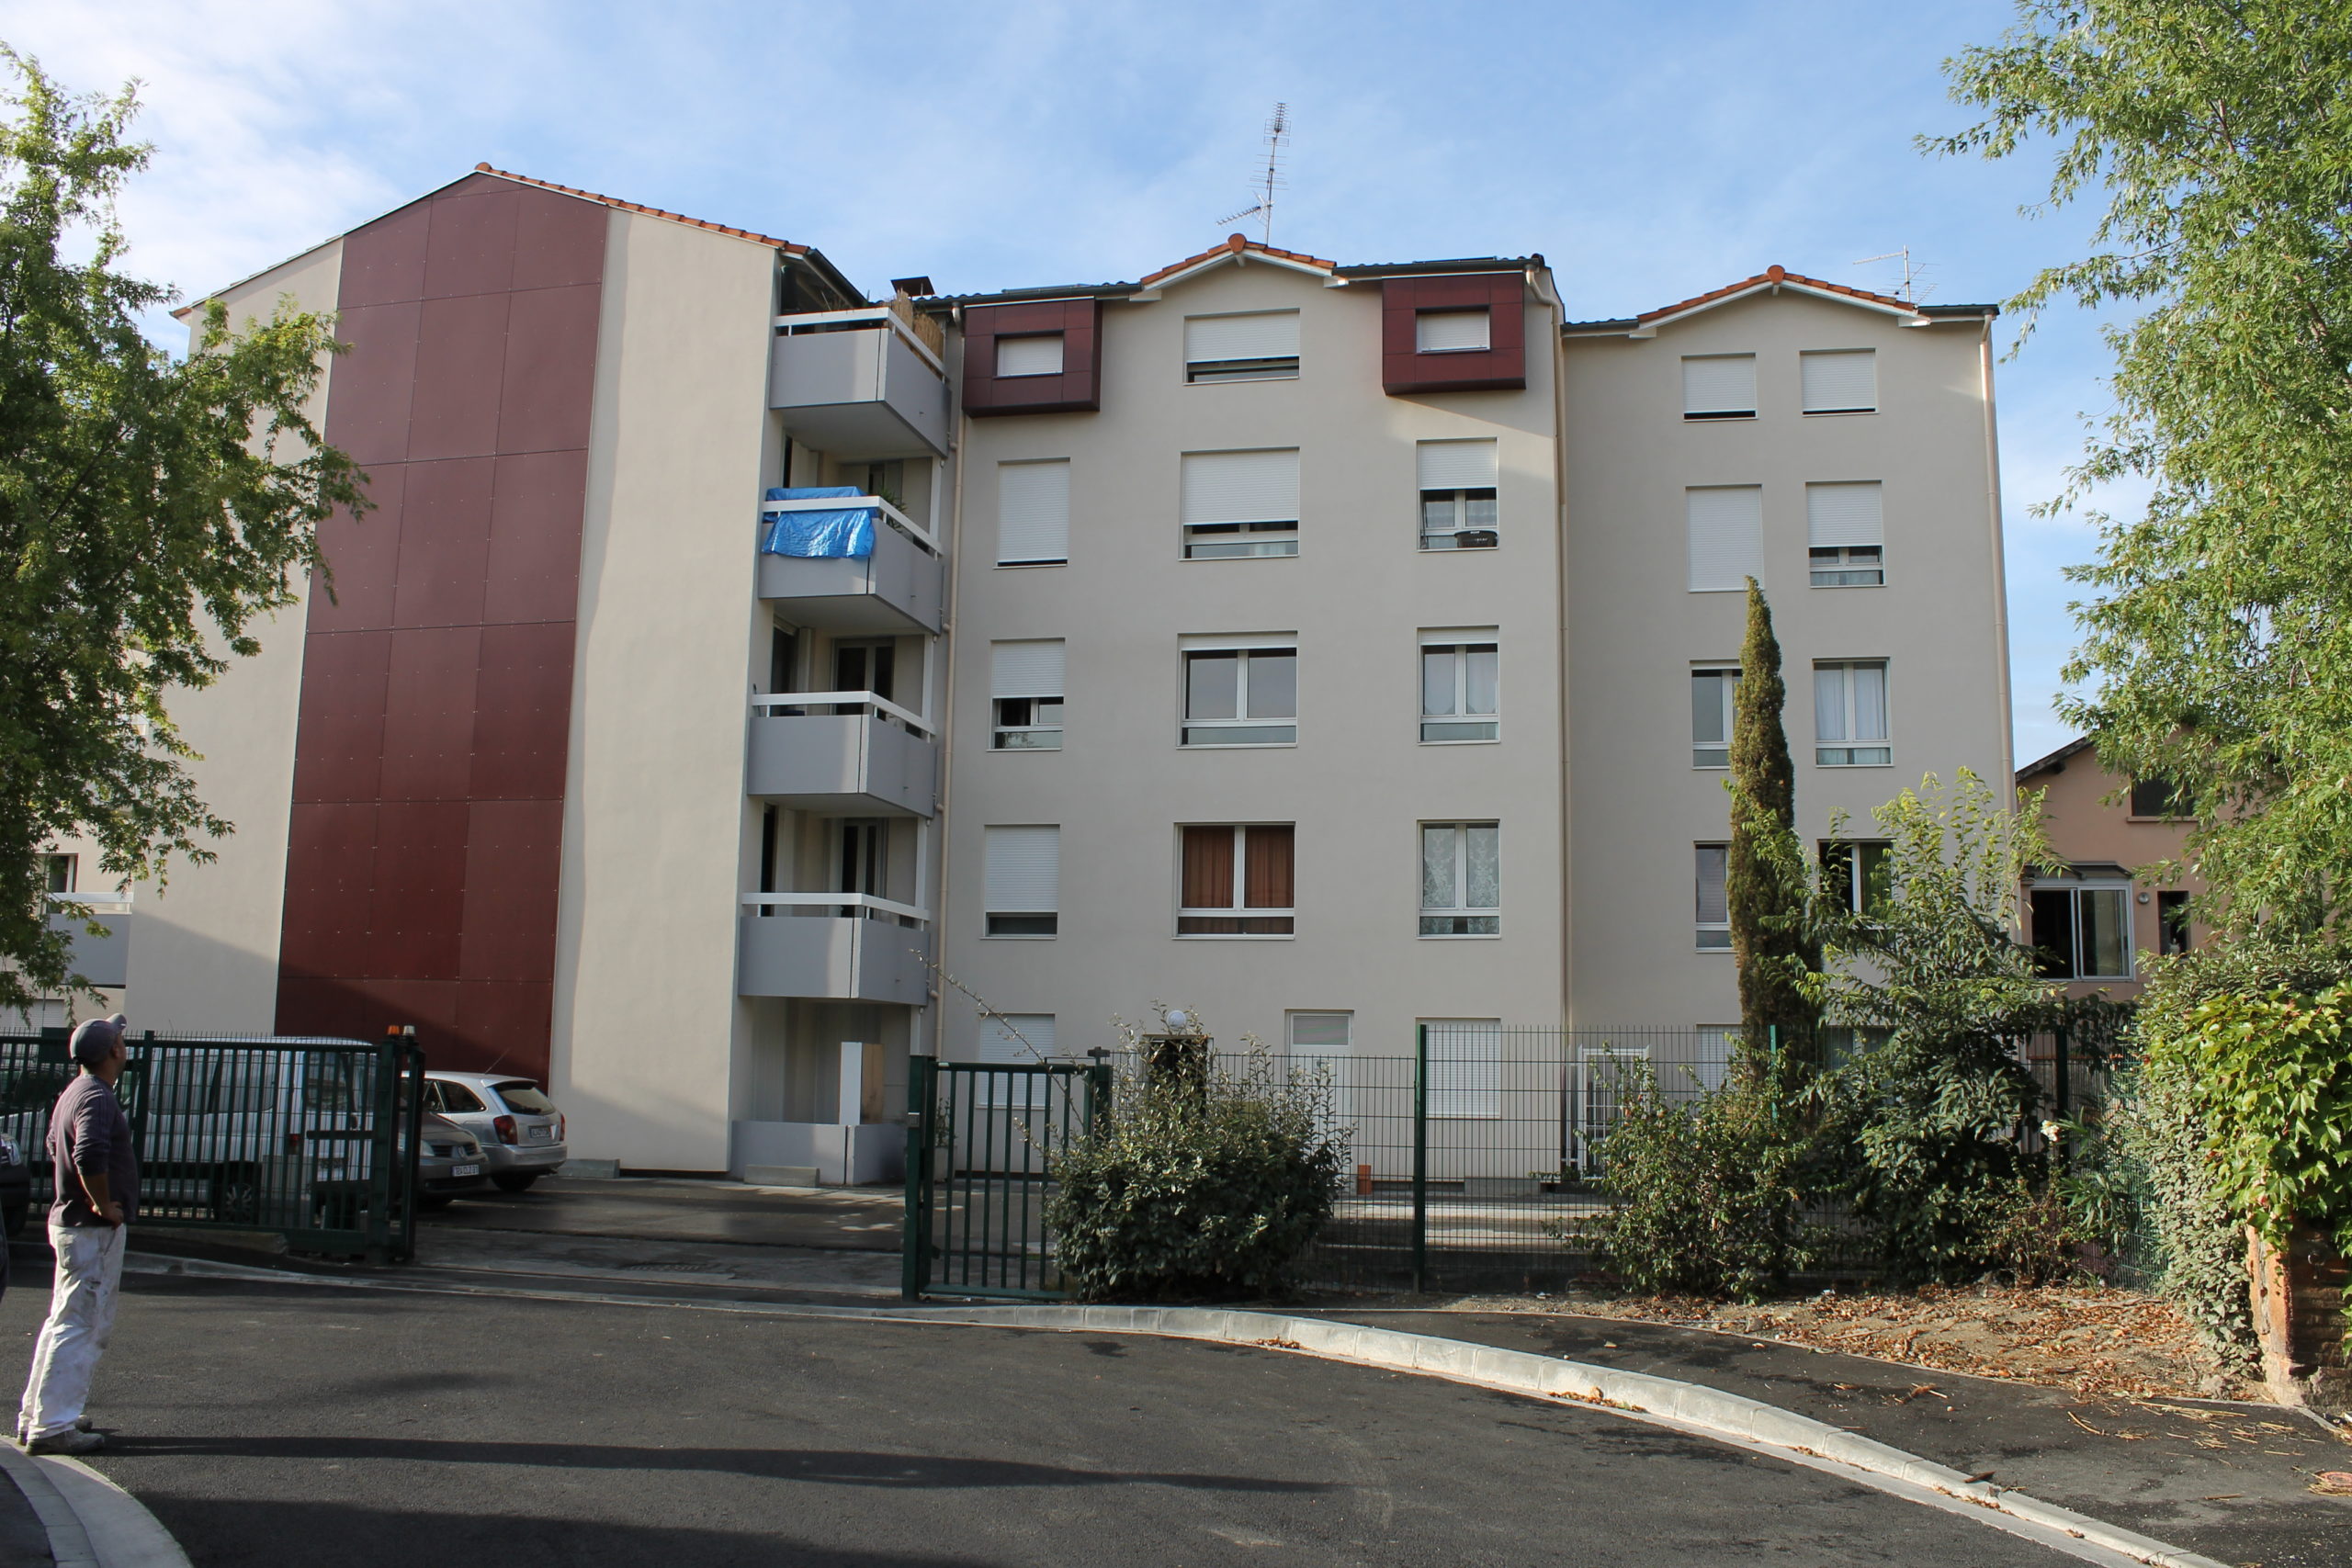 Résidence TUNIS (35 logements) • TOULOUSE (31) 2